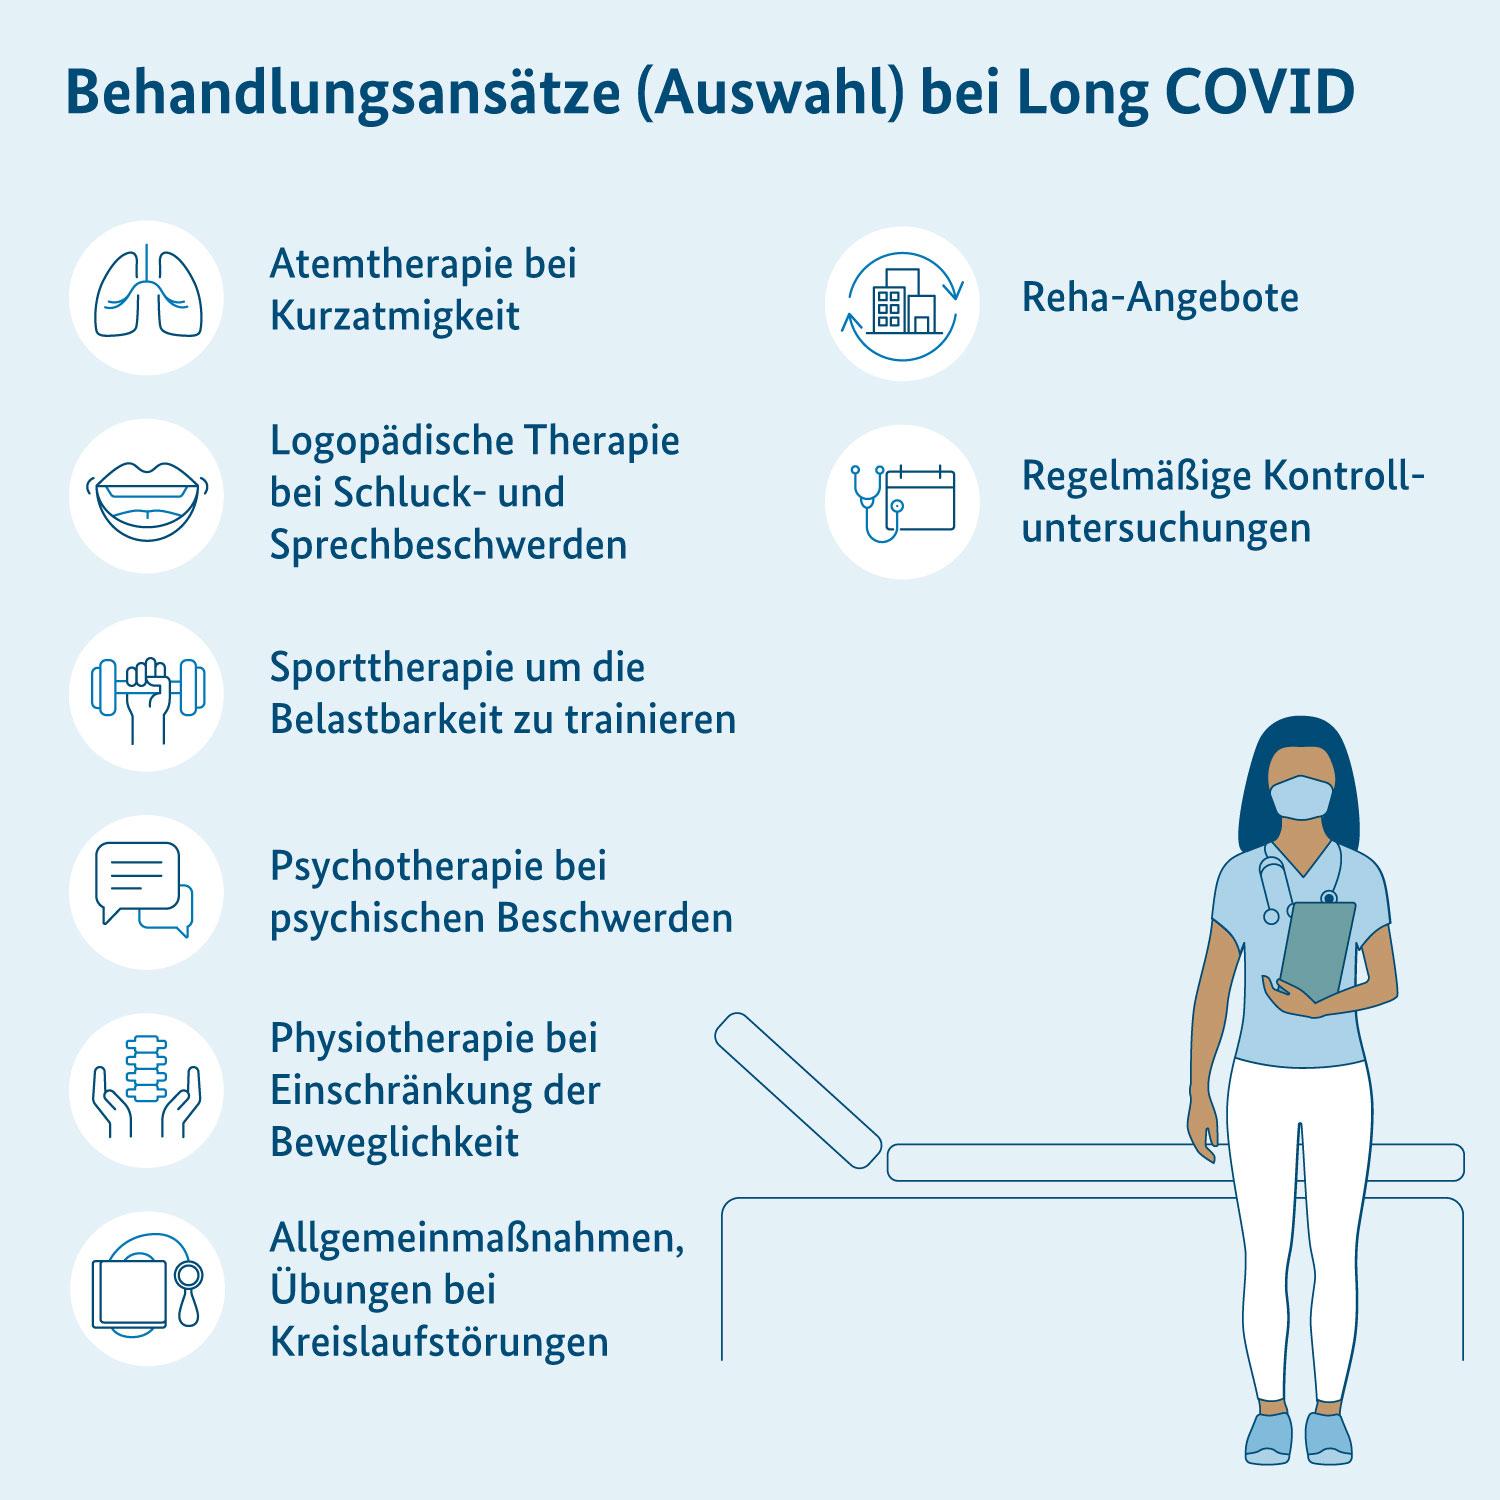 Hinweise zu Behandlungsansätzen bei Long COVID, Person mit Stethoskop, stehend vor Behandlungsliege